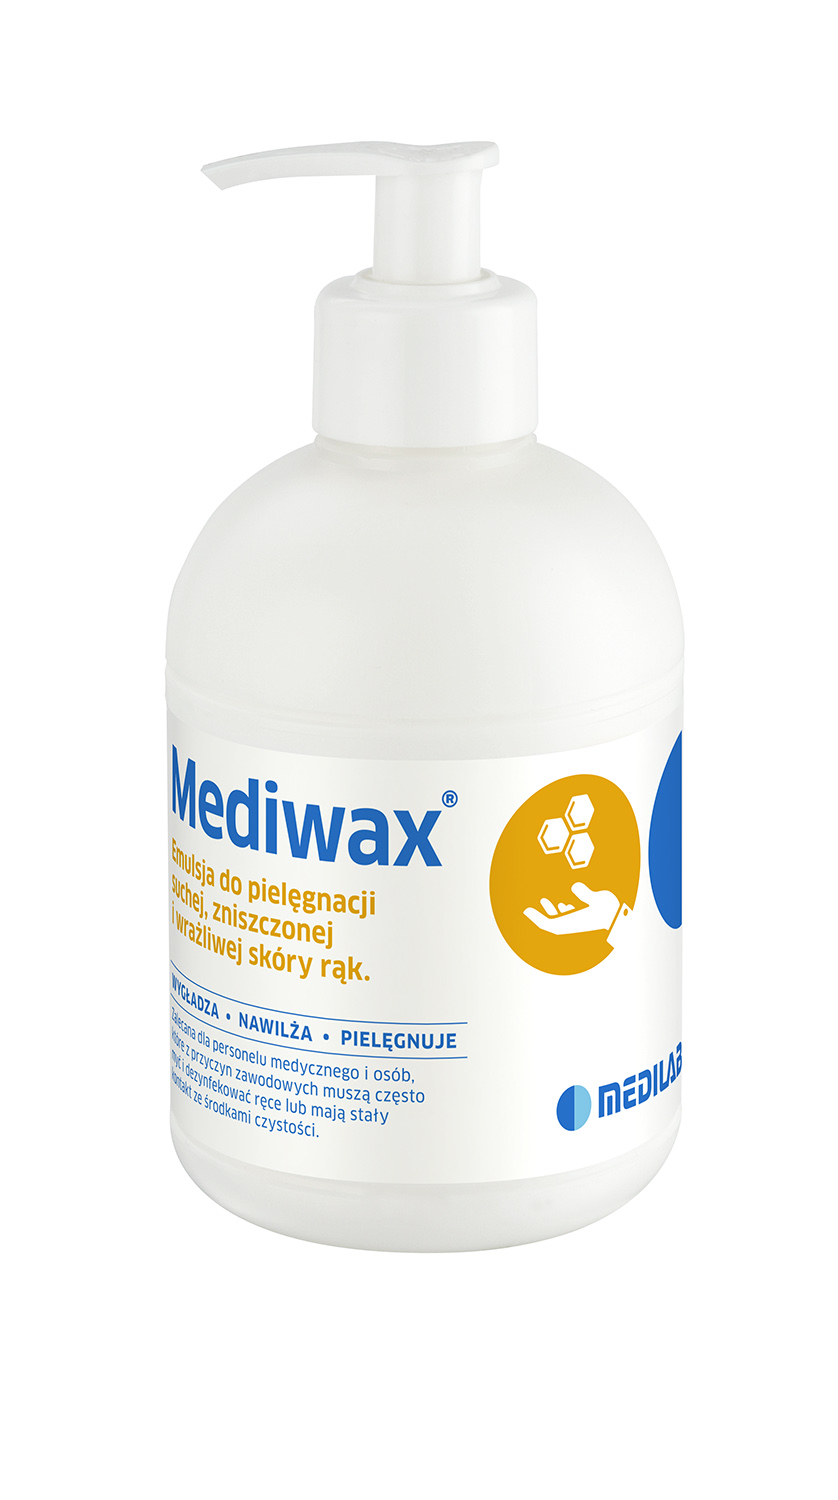 Mediwax emulsja krem do pielęgnacji rąk 330 ml